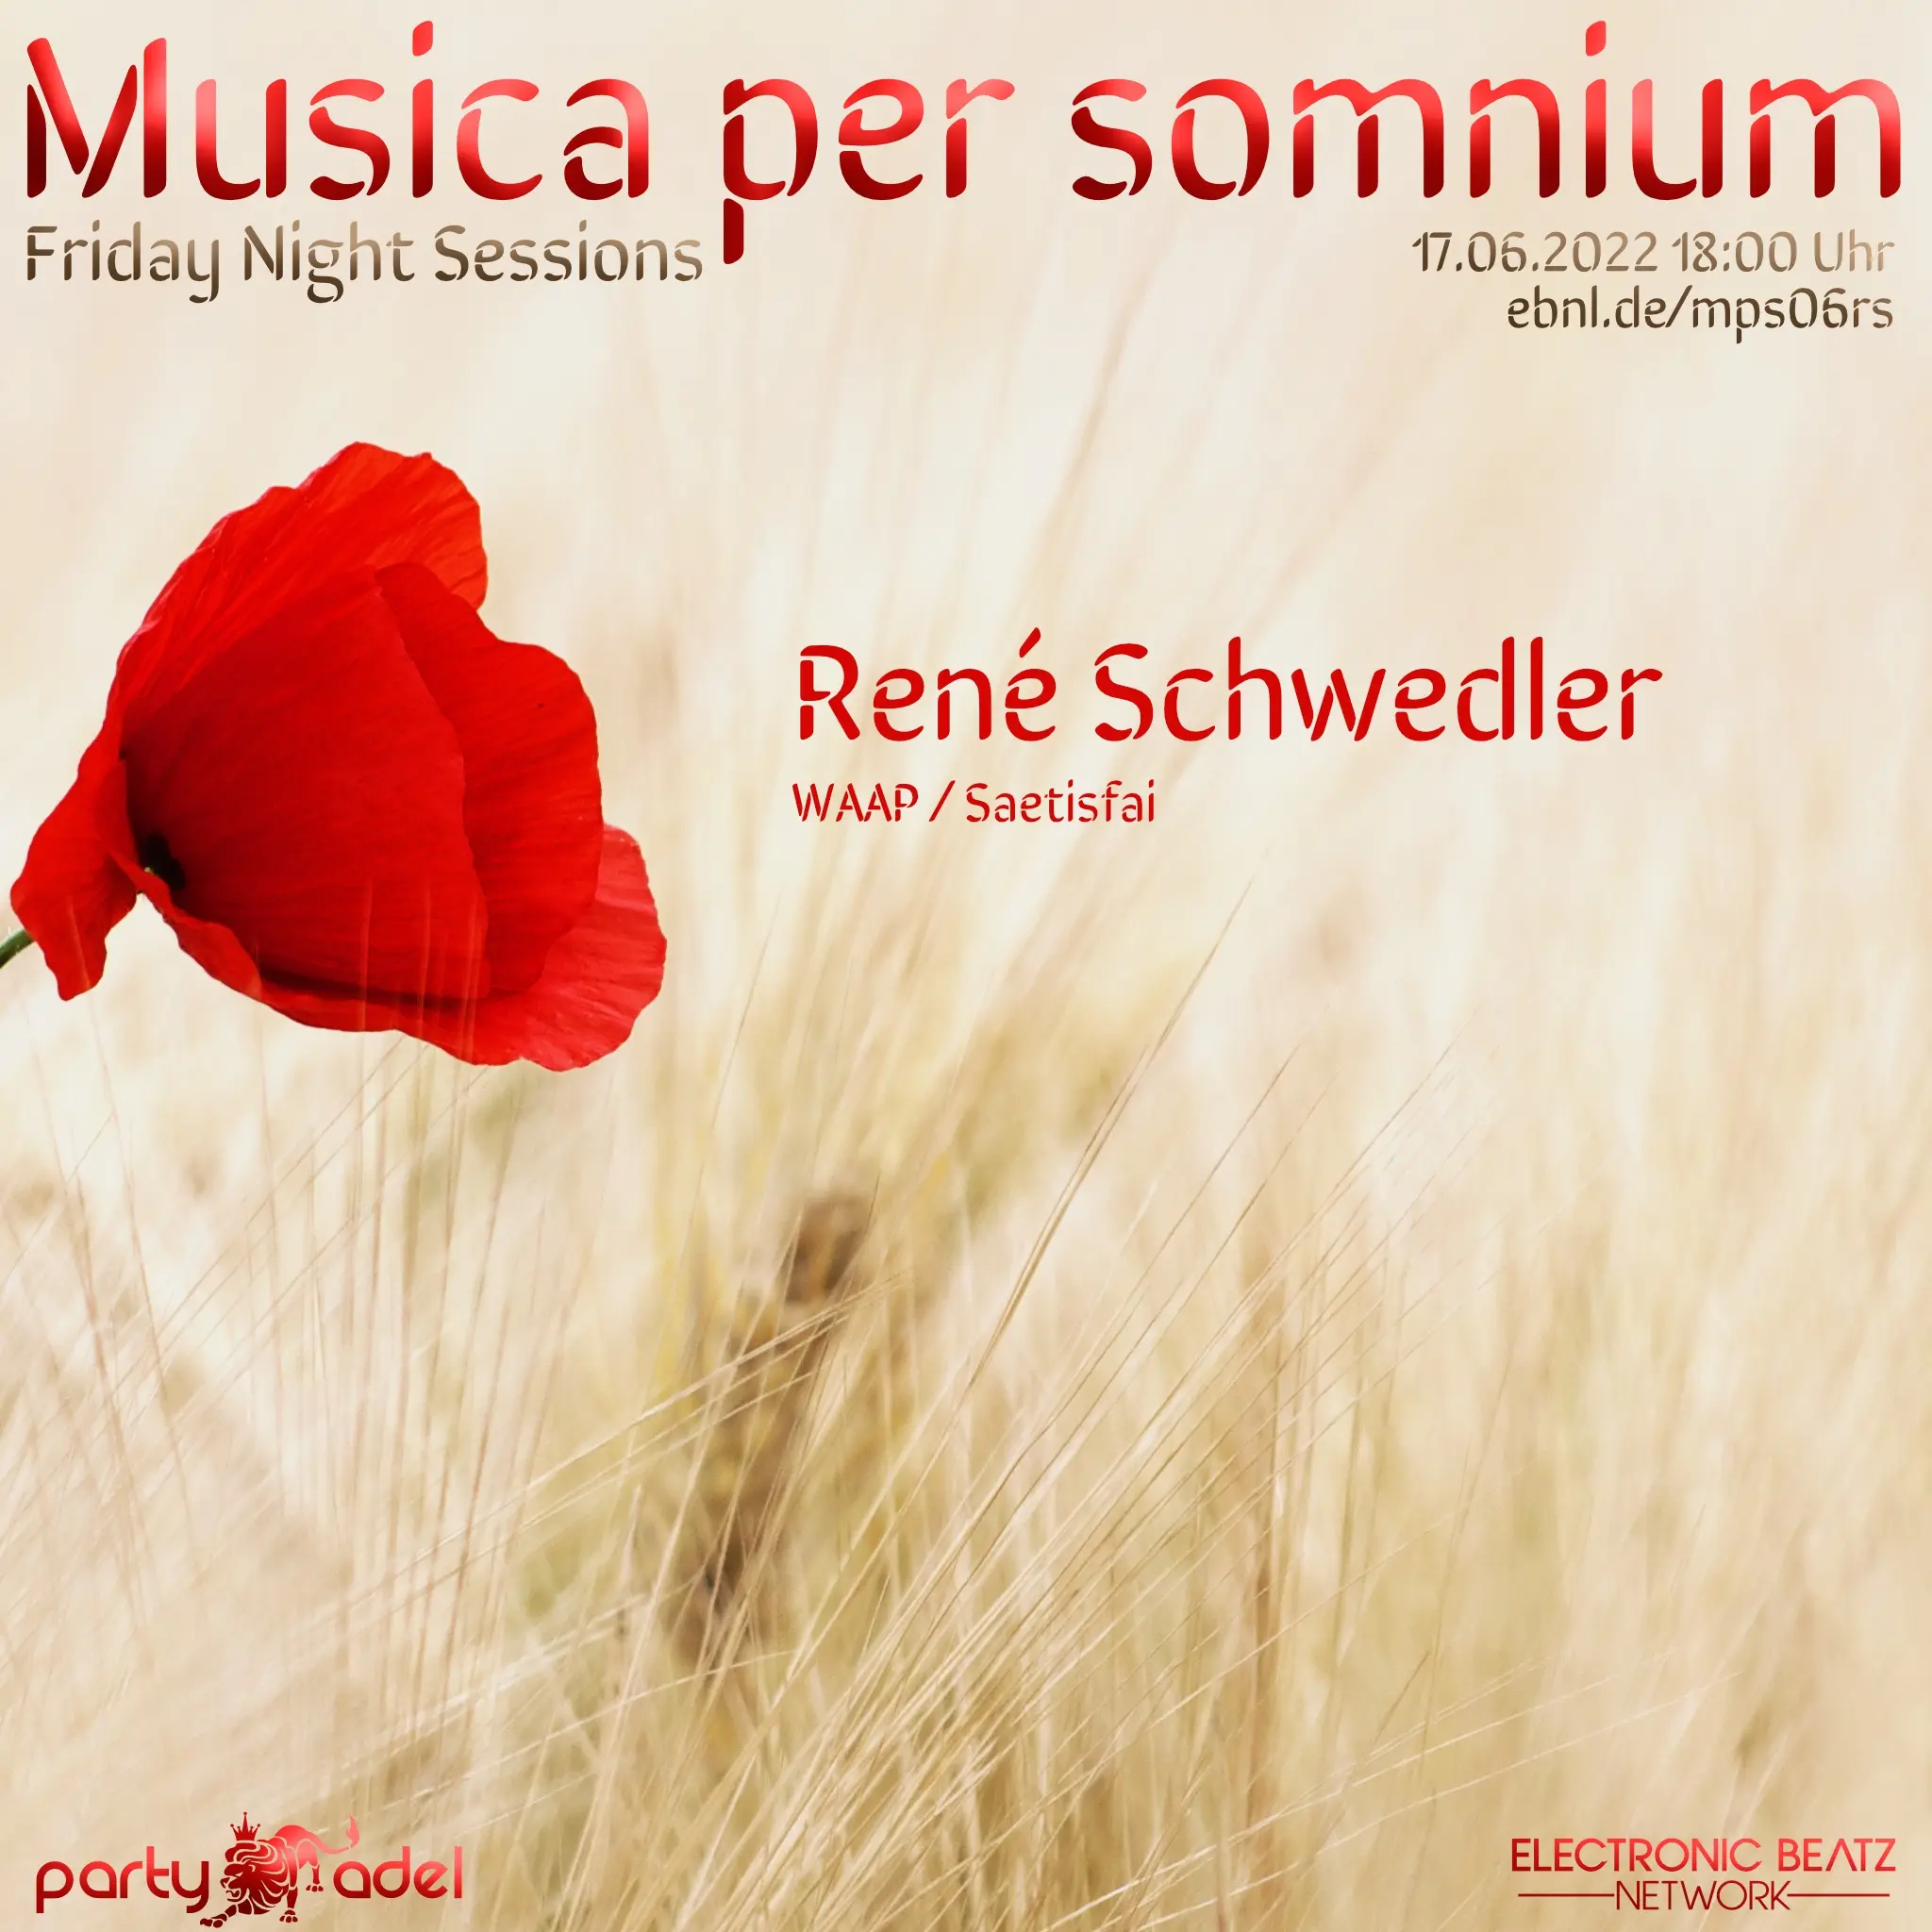 René Schwedler @ Musica per somnium (17.06.2022)